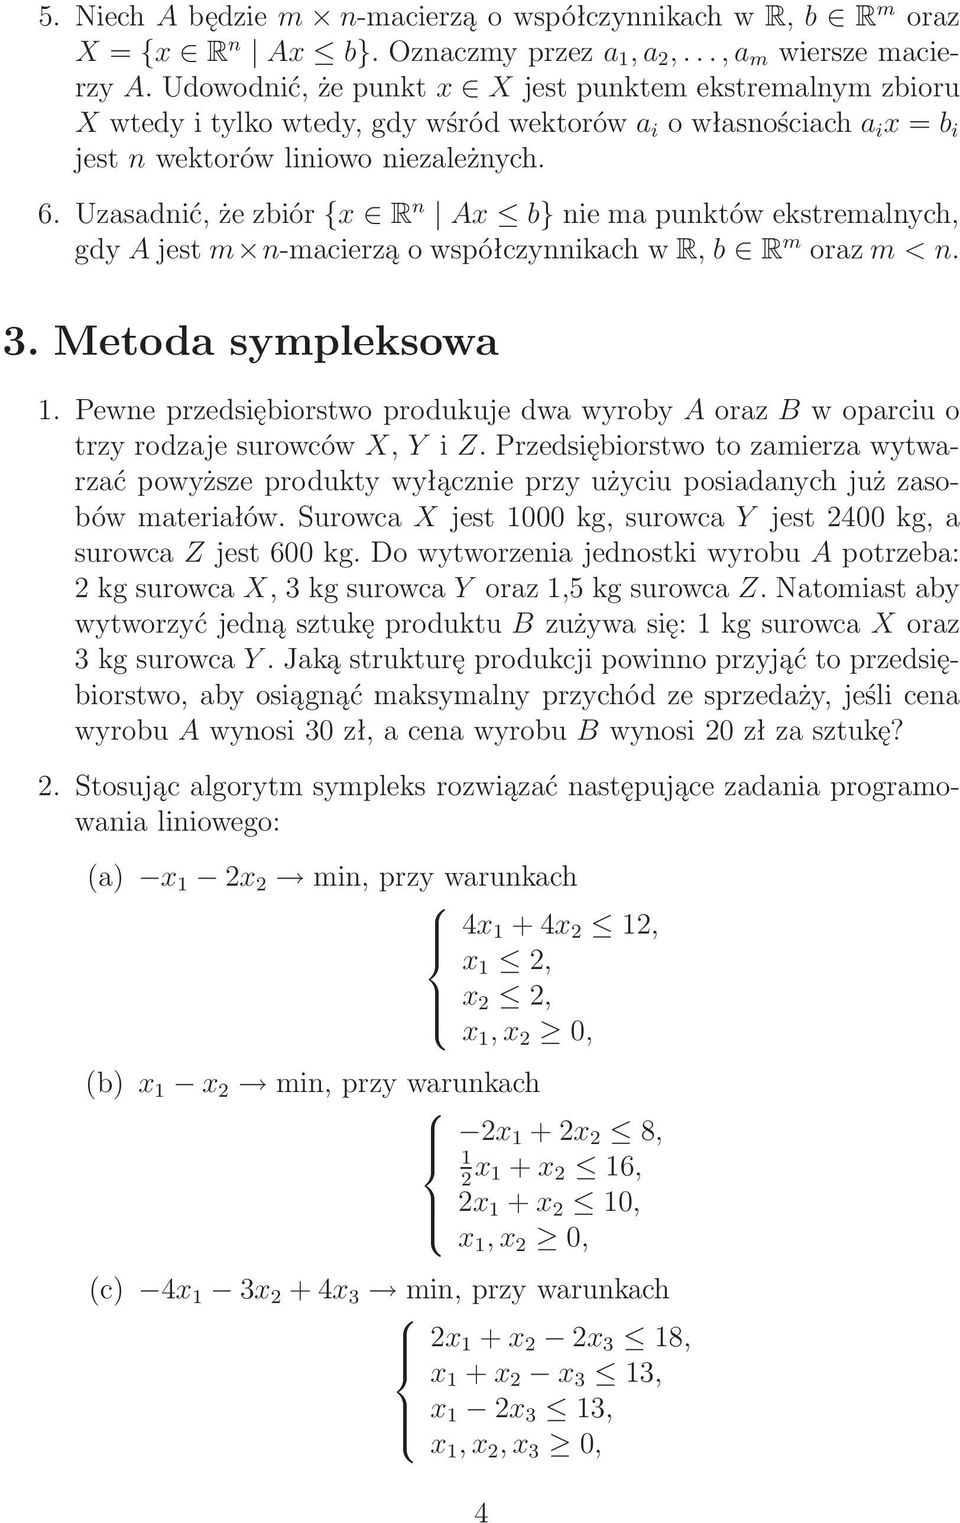 Uzasadnić,żezbiór {x R n Ax b}niemapunktówekstremalnych, gdy Ajest m n-macierząowspółczynnikachwr, b R m oraz m < n. 3. Metoda sympleksowa 1.